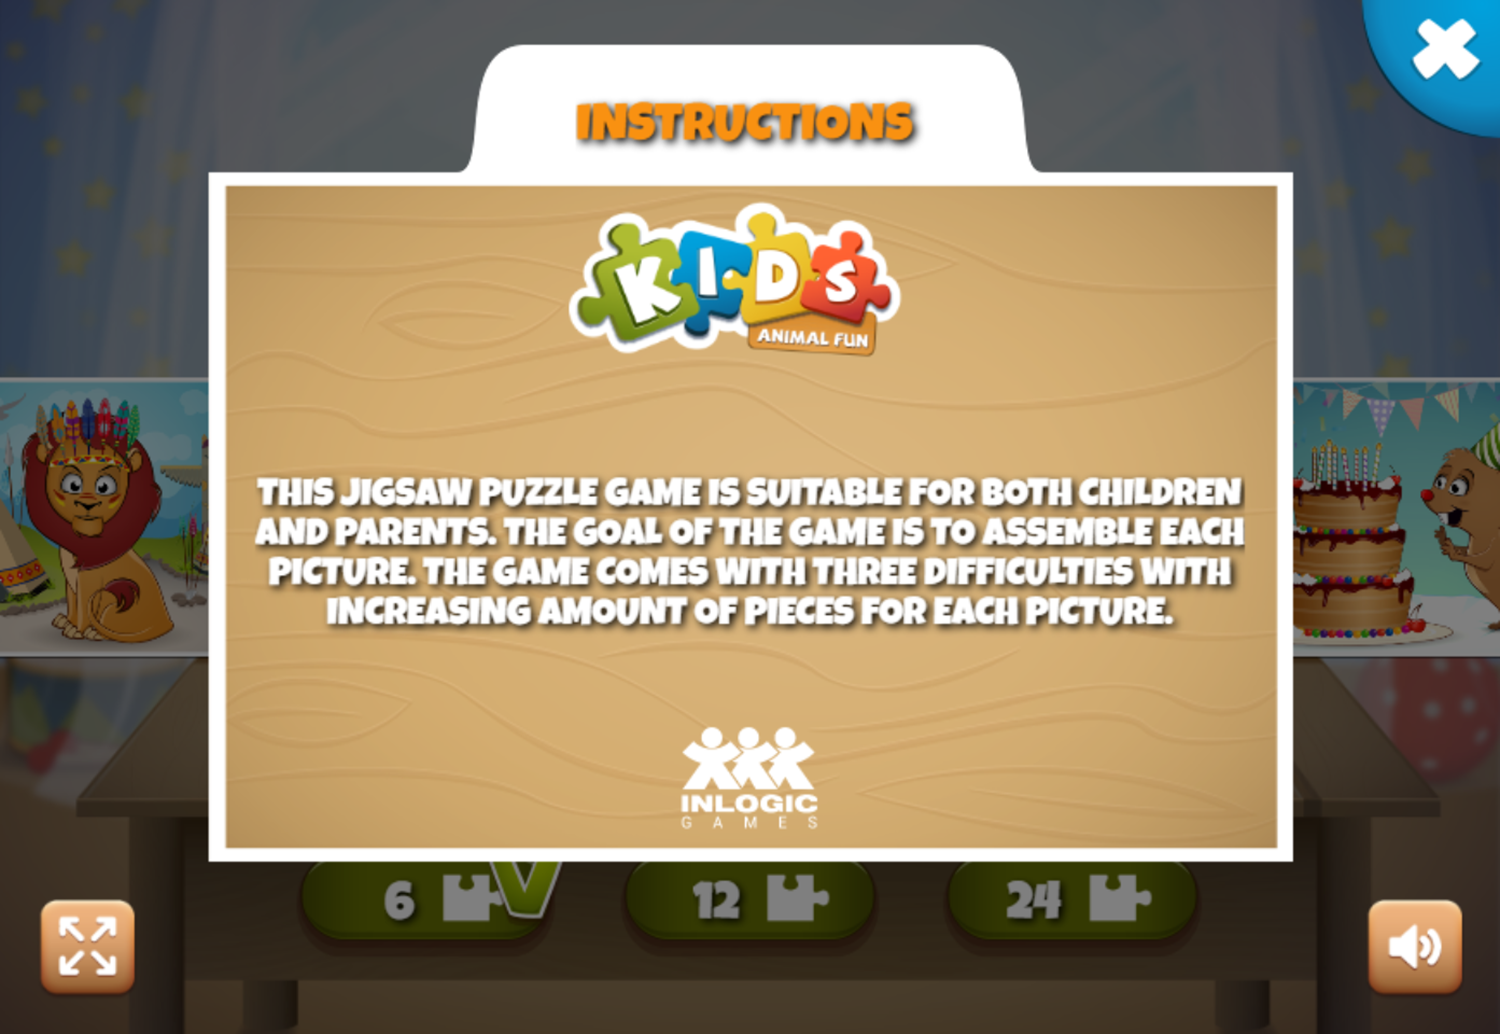 Kids Animal Fun Game Instructions Screenshot.